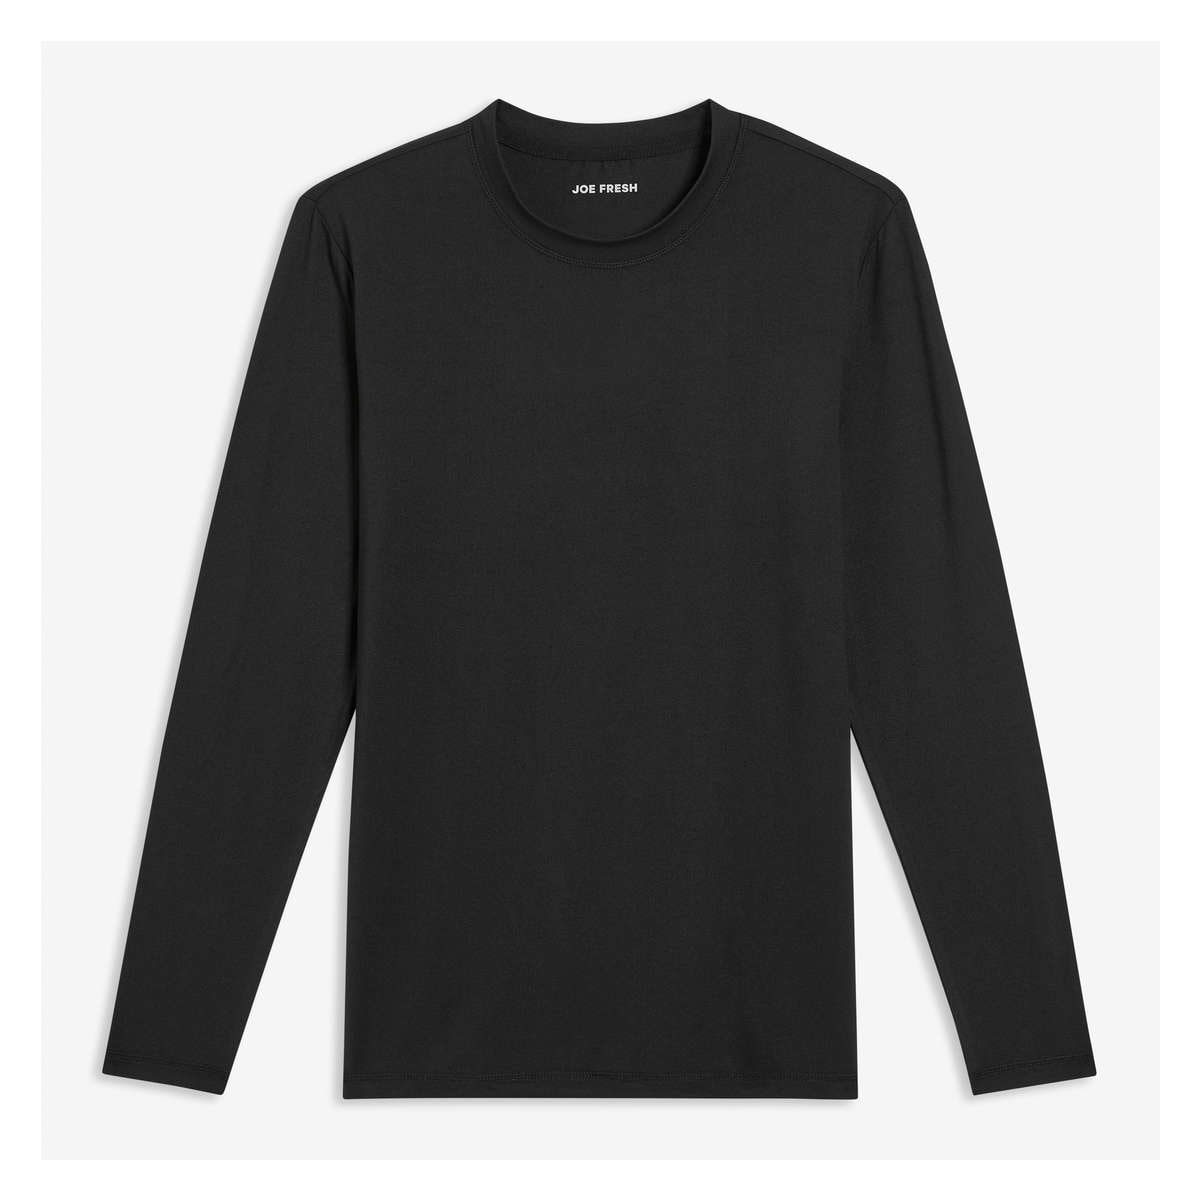 Buy Black Thermal Wear for Men by Urban Hug Online